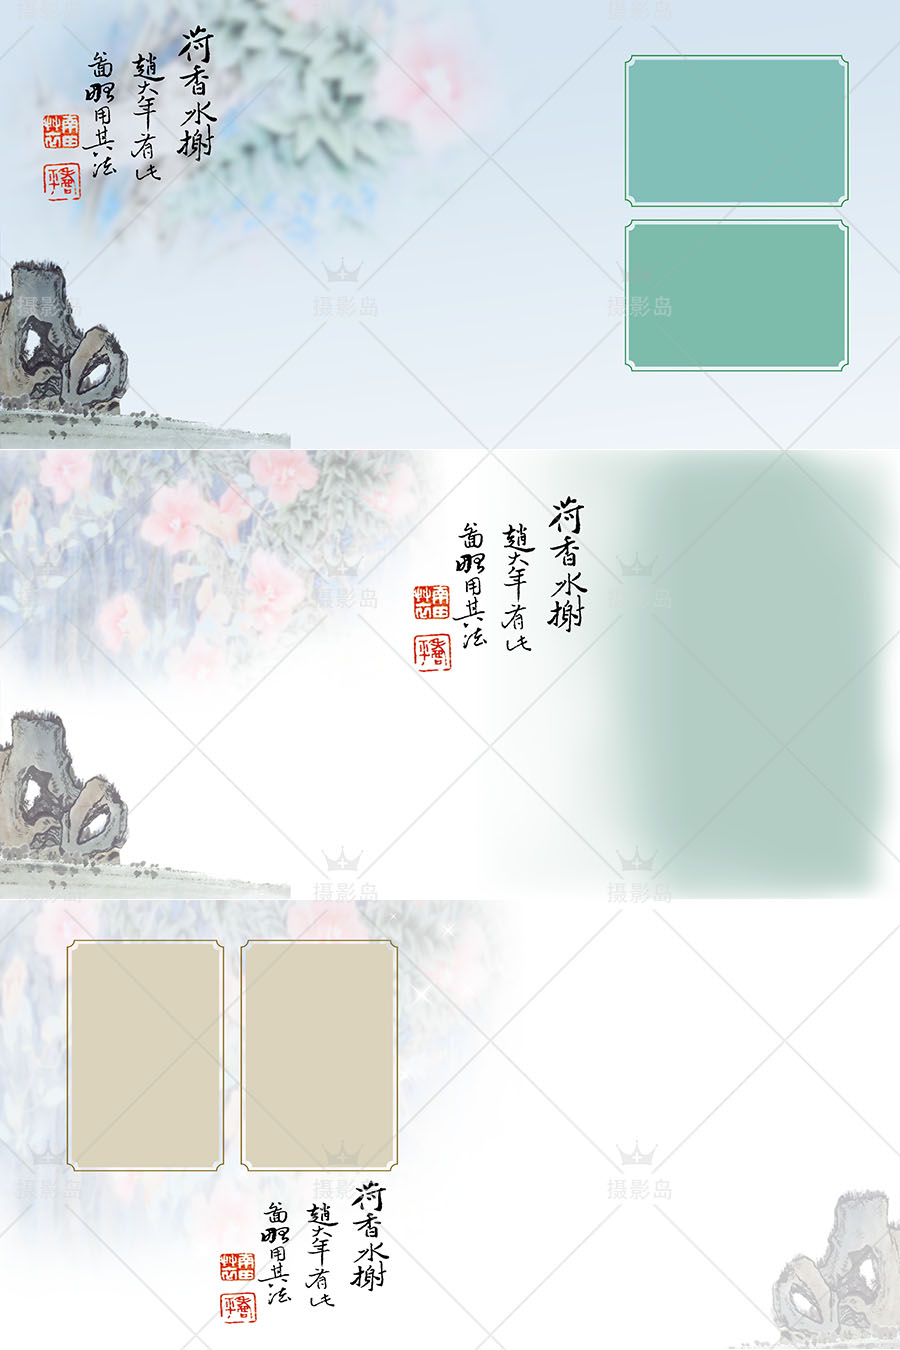 中国风古装写真艺术PSD相册模板，影楼盘子坊、秀禾、国潮照片后期相册素材